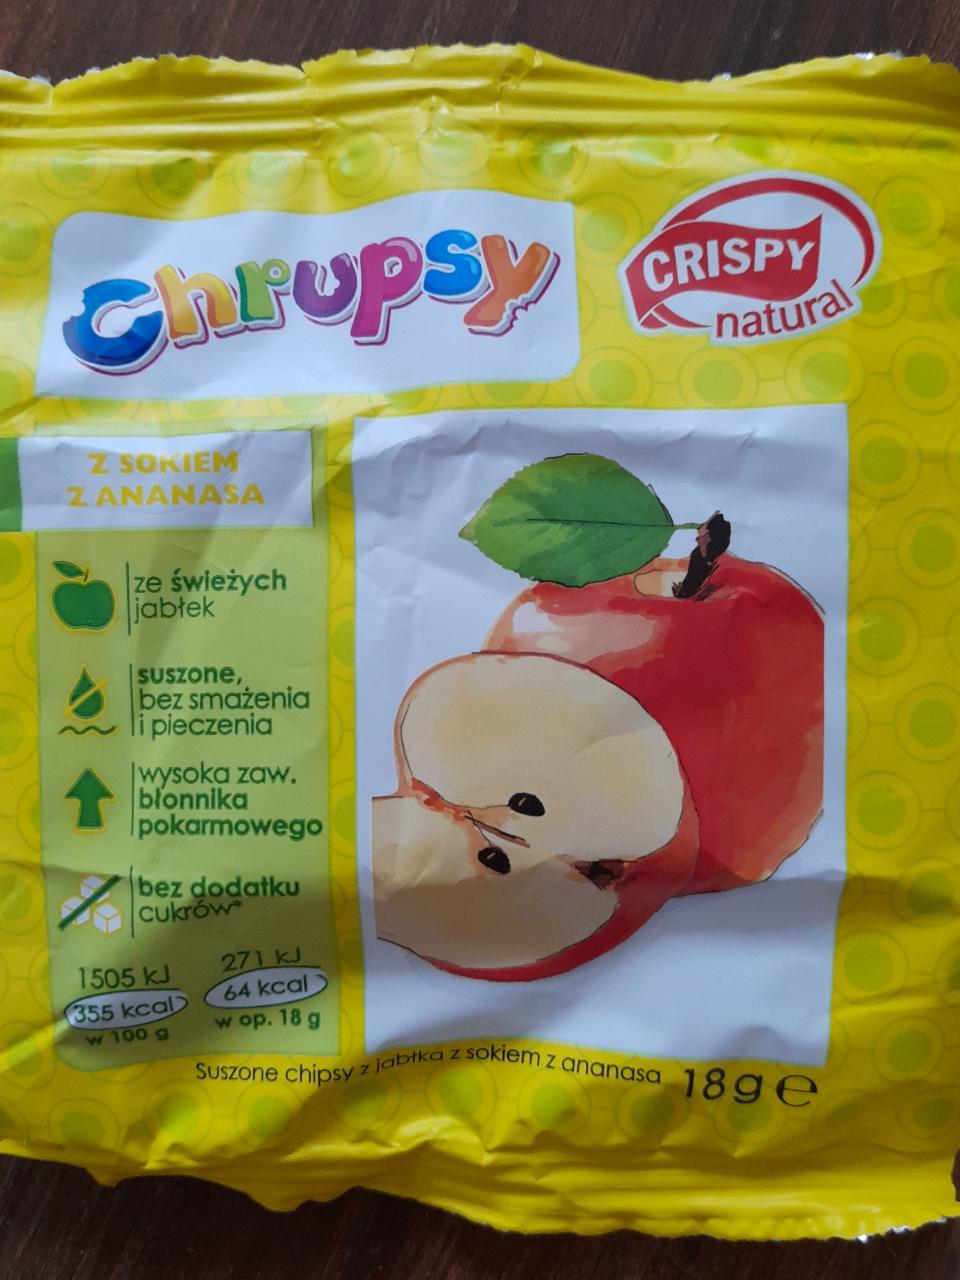 Zdjęcia - Crispy Natural Suszone plastry jabłek o smaku ananasowym 18 g